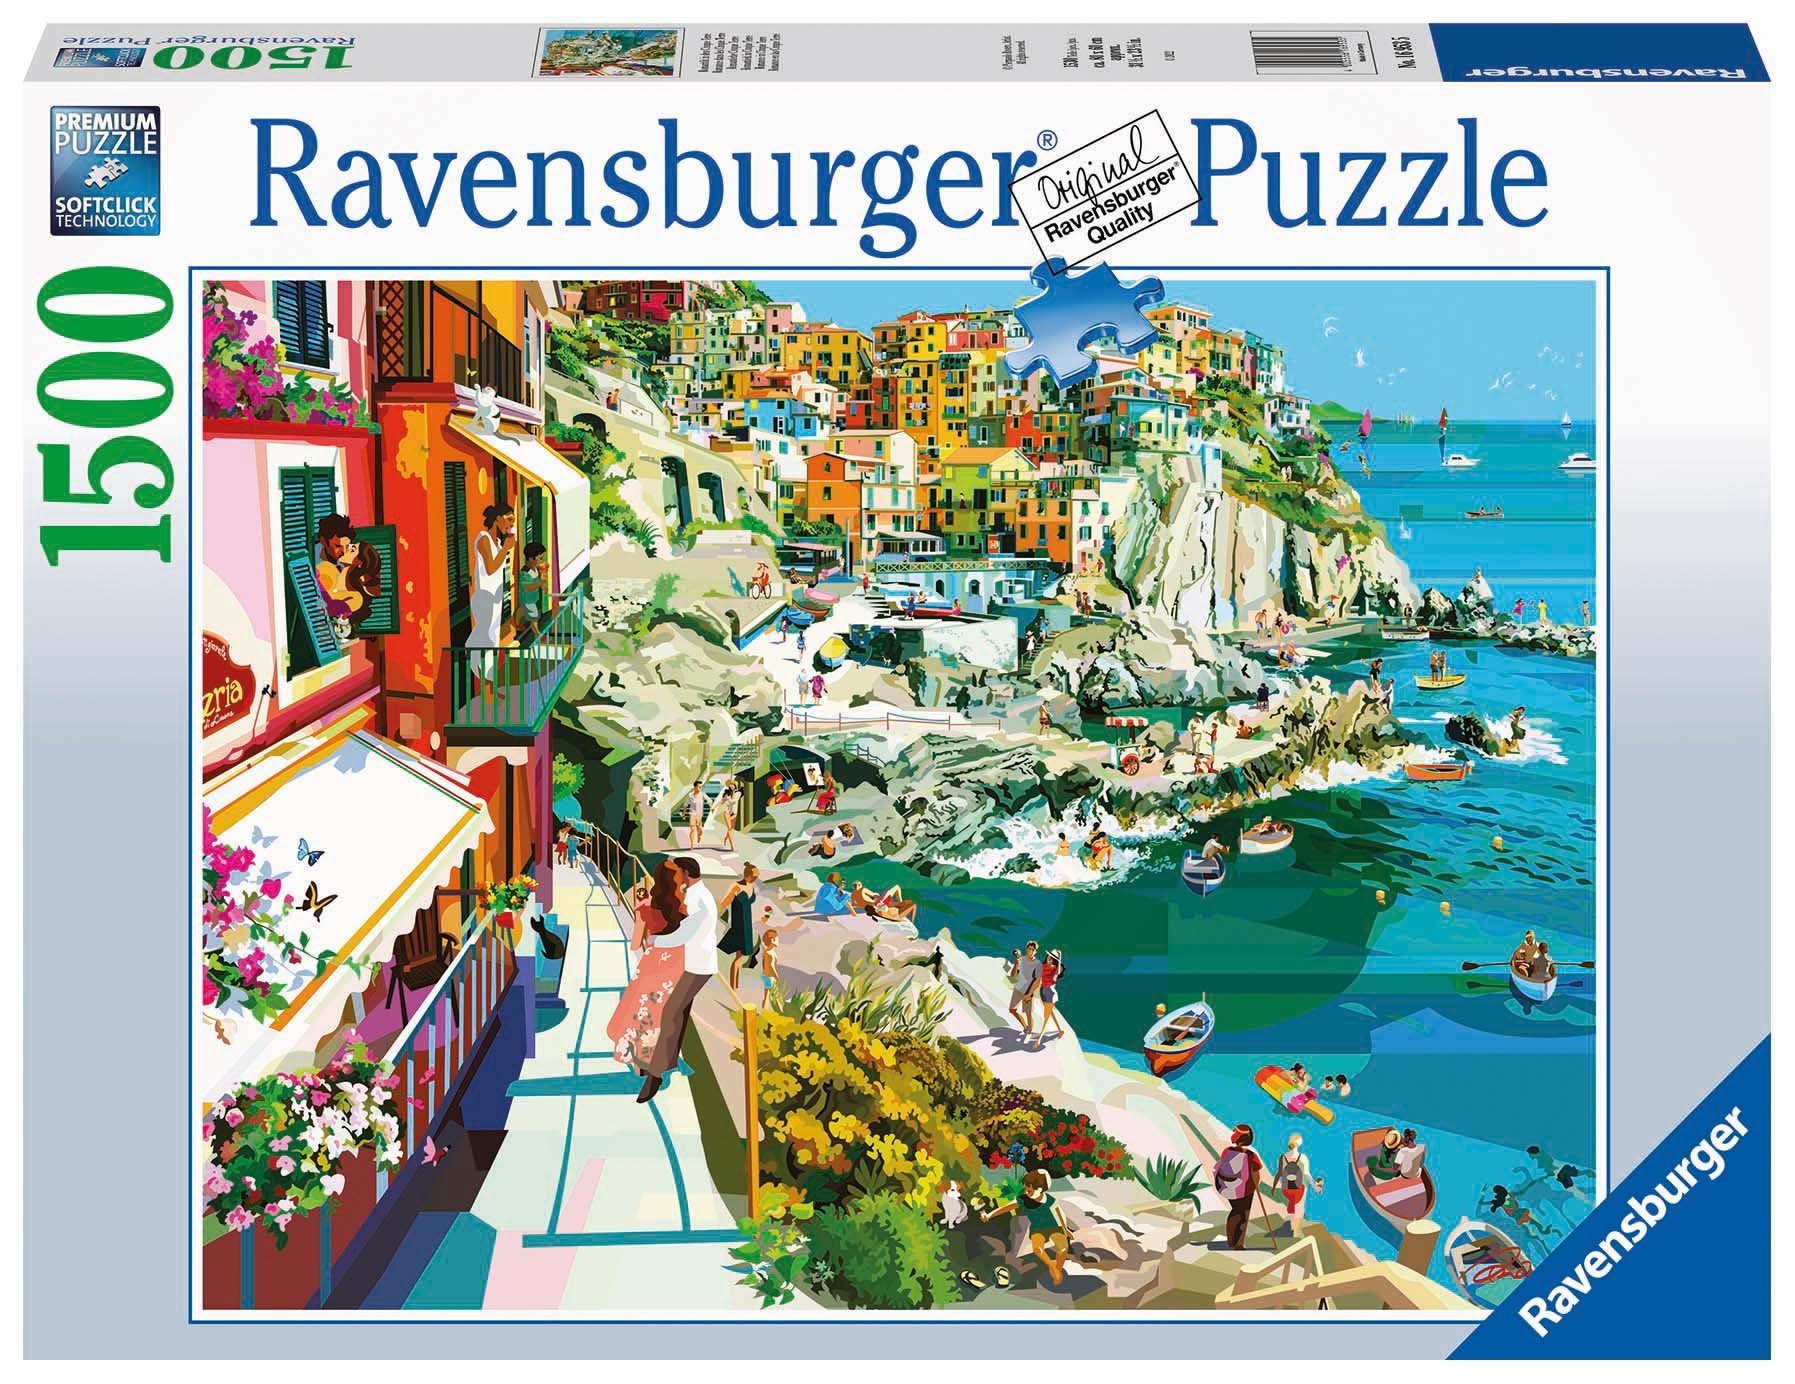 Ravensburger Puzzle Verliebt in Cinque Terre, 1500 Puzzleteile, Made in Germany, FSC® - schützt Wald - weltweit